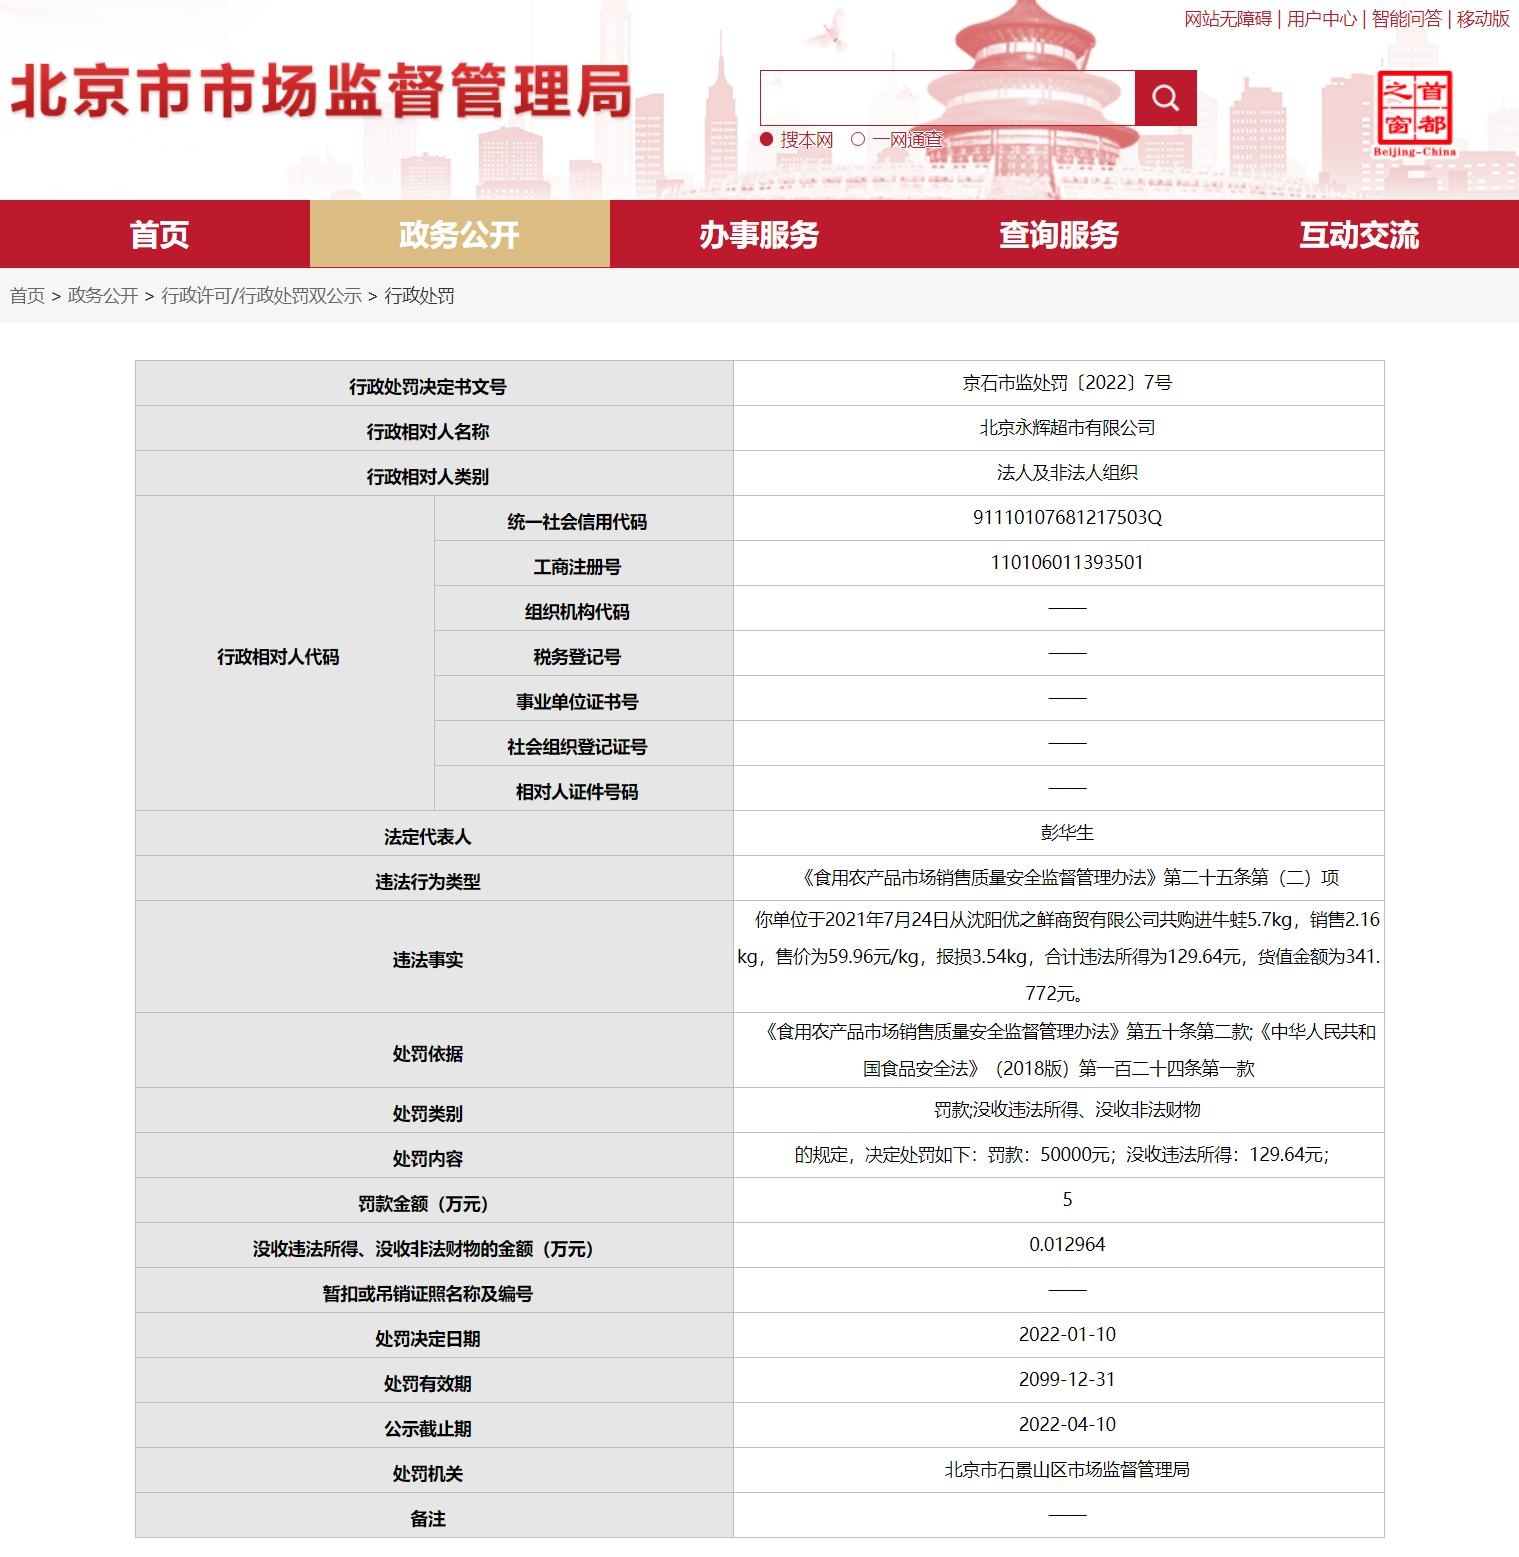 北京永辉超市因牛蛙兽药残留超标被罚5万元